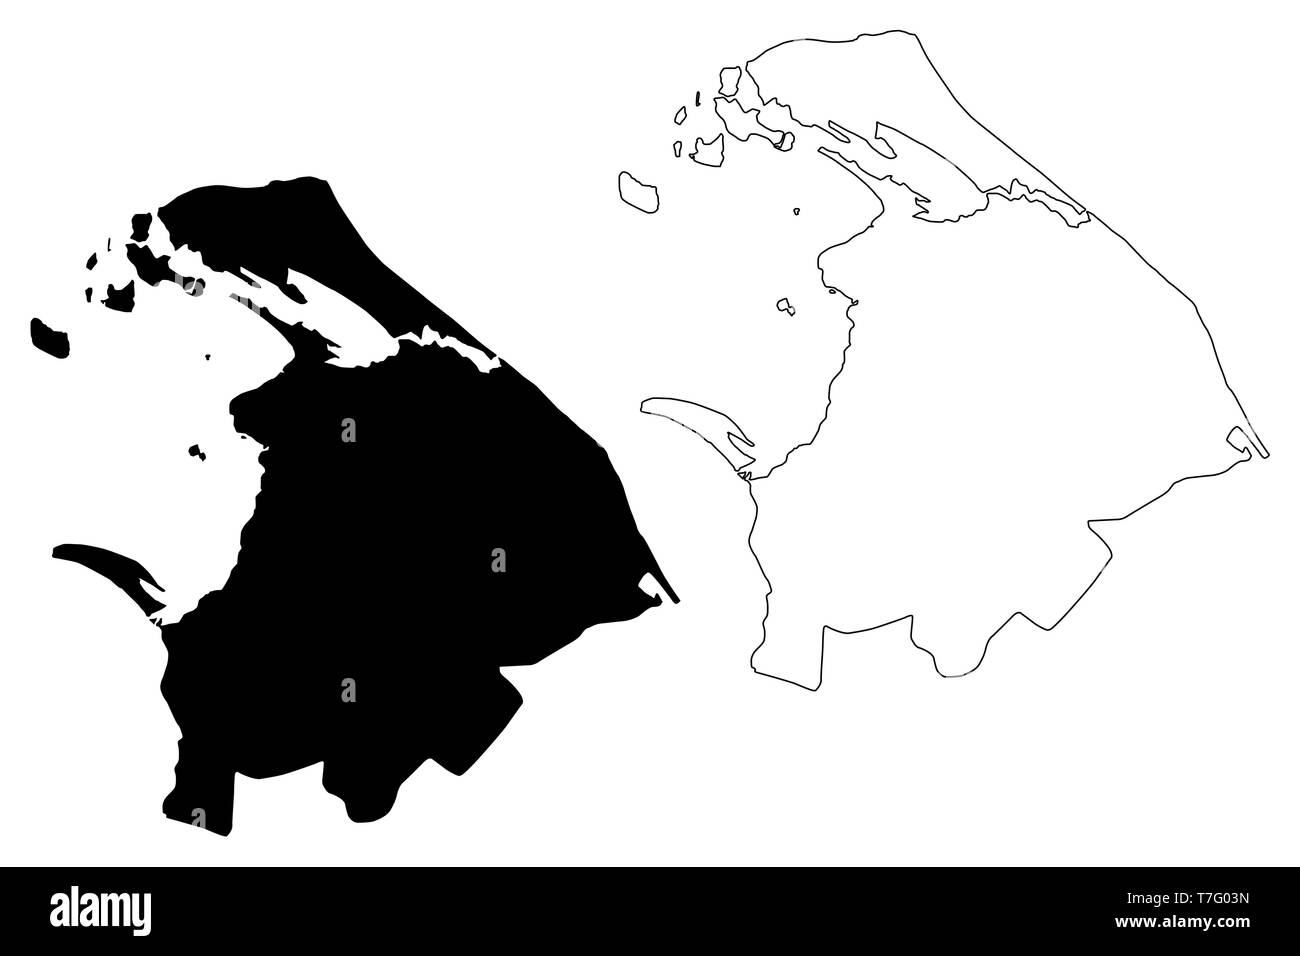 Province du Nord, Sri Lanka (divisions administratives, République socialiste démocratique de Sri Lanka, de Ceylan) map vector illustration gribouillage, croquis N Illustration de Vecteur